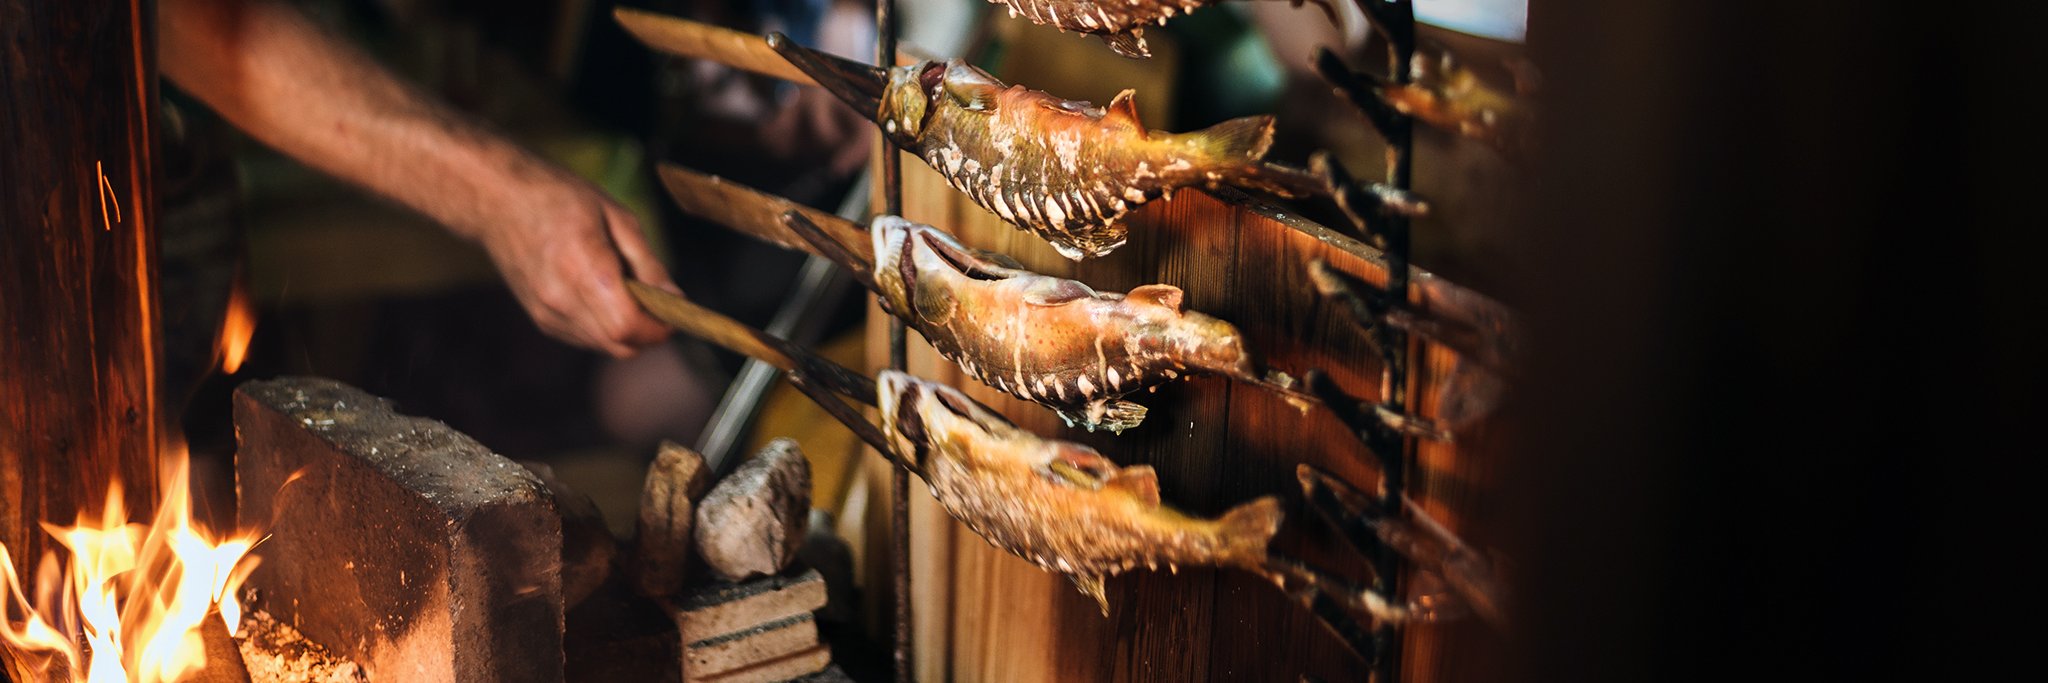 Die »Lechpartie« im Ausseerland ist eine jahrhundertealte Tradition und das »Erntedankfest der Fischer« – sagenumwobene und legendäre Abende, bei denen Saiblinge am offenen Feuer gebraten werden.